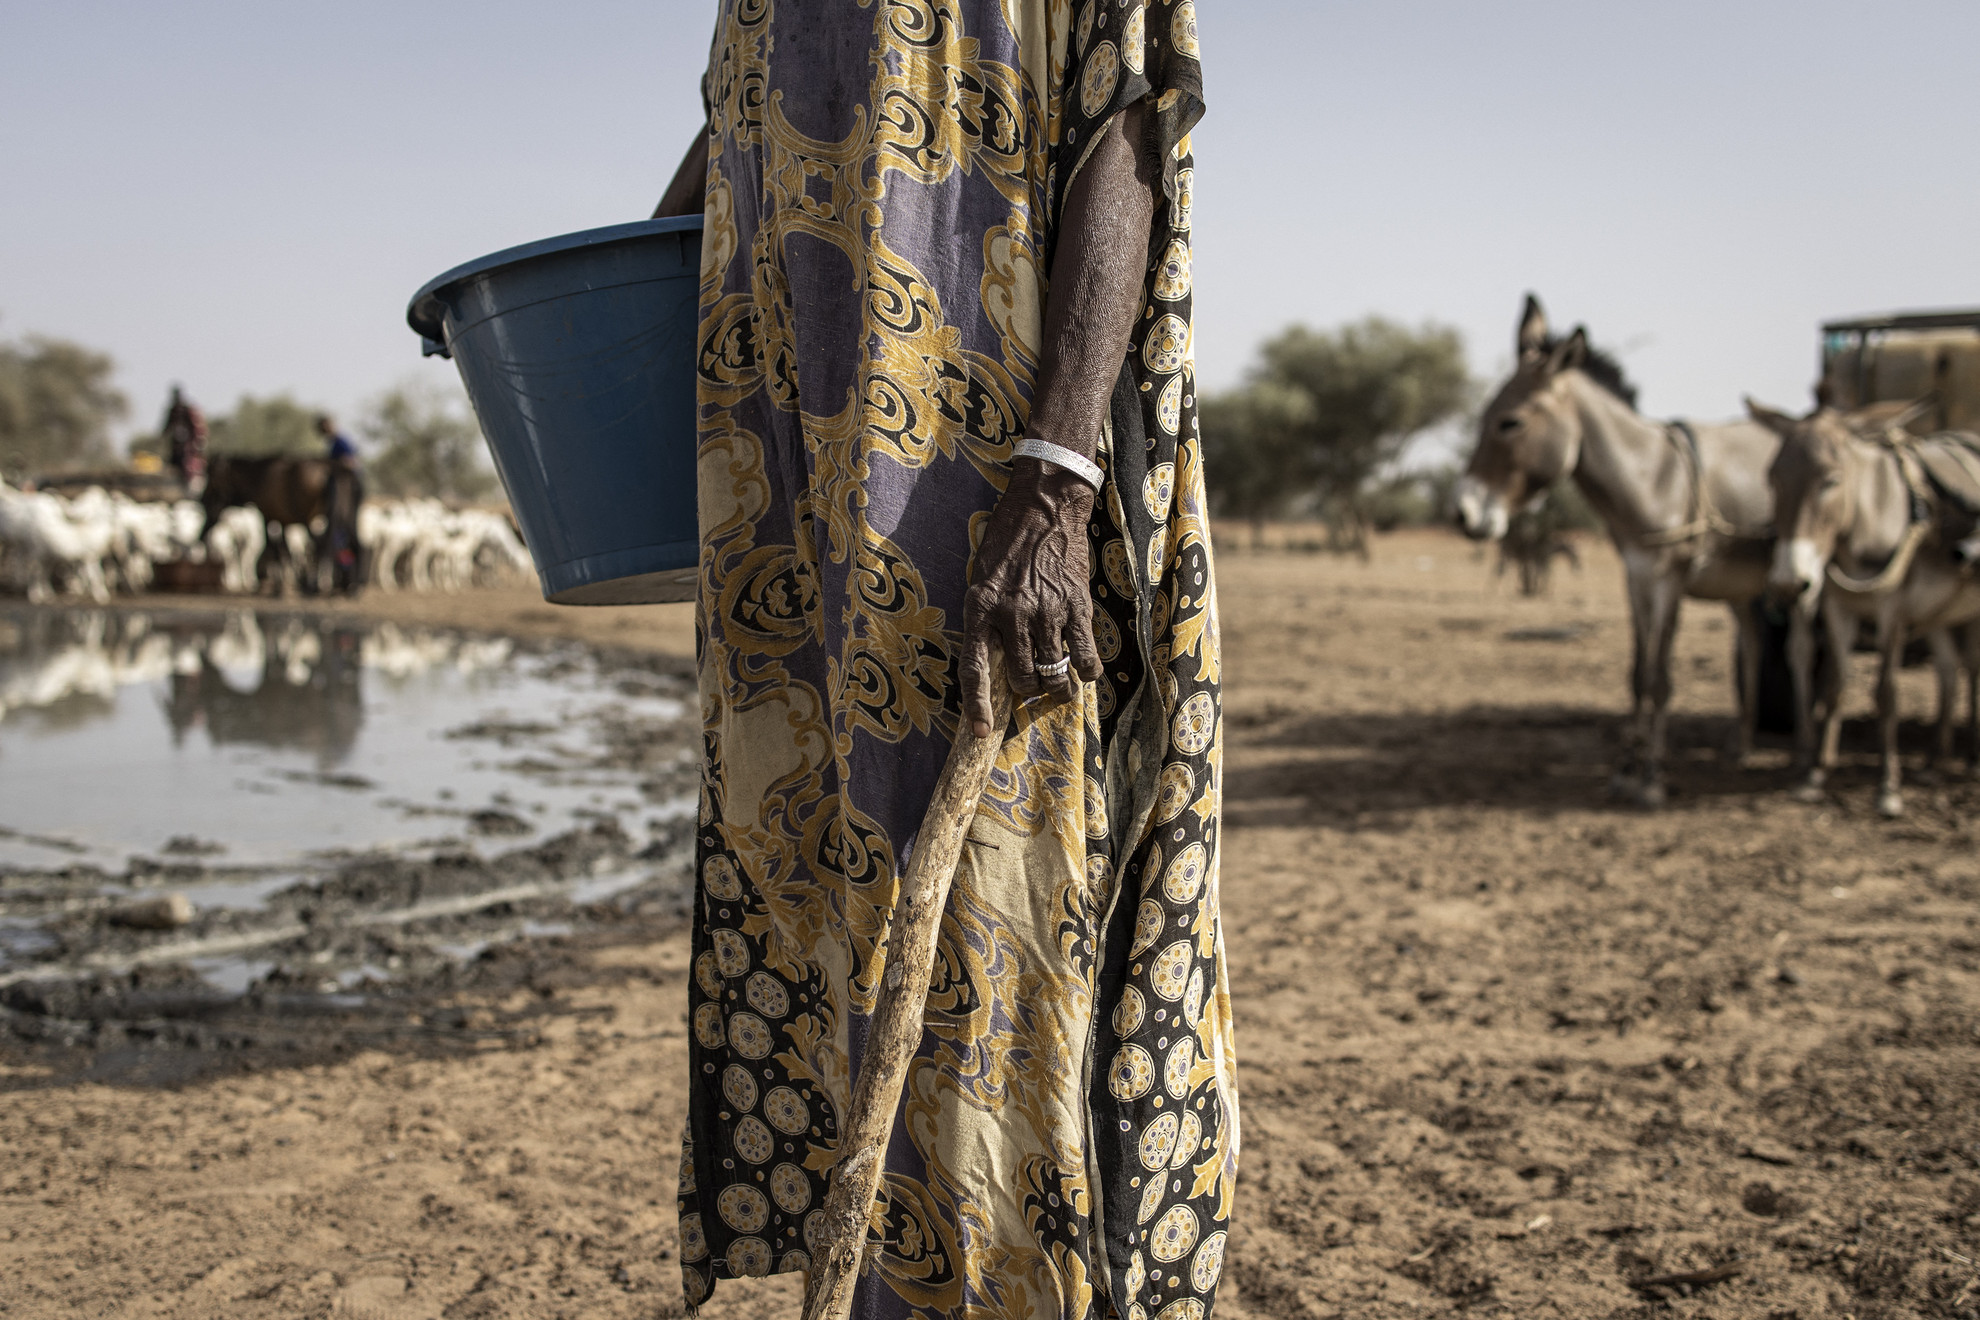 Egy fulani pásztor egy vízvételi ponton Loumbel Lana-ban, Szenegálban 2023. május 19-én. A pásztorok számára a szélsőséges hőség közvetlen hatása, hogy jószágaik kétszer annyit isznak, mint általában. Egy juh naponta körülbelül 2,5 liter vizet iszik, most viszont napi 4-5 literre van szükségük. A pásztoroknak naponta többször is el kell jutniuk az akár 20 kilóméter távolságra lévő vízvételi pontokhoz, és kétszer annyit kell költeniük a vízvásárlásra. Április óta Matam régióját a világ legmelegebb helyének jelölik. A hőmérséklet árnyékban eléri a 48 Celsius-fokot, közvetlen napsütésben pedig az ötven fokot.